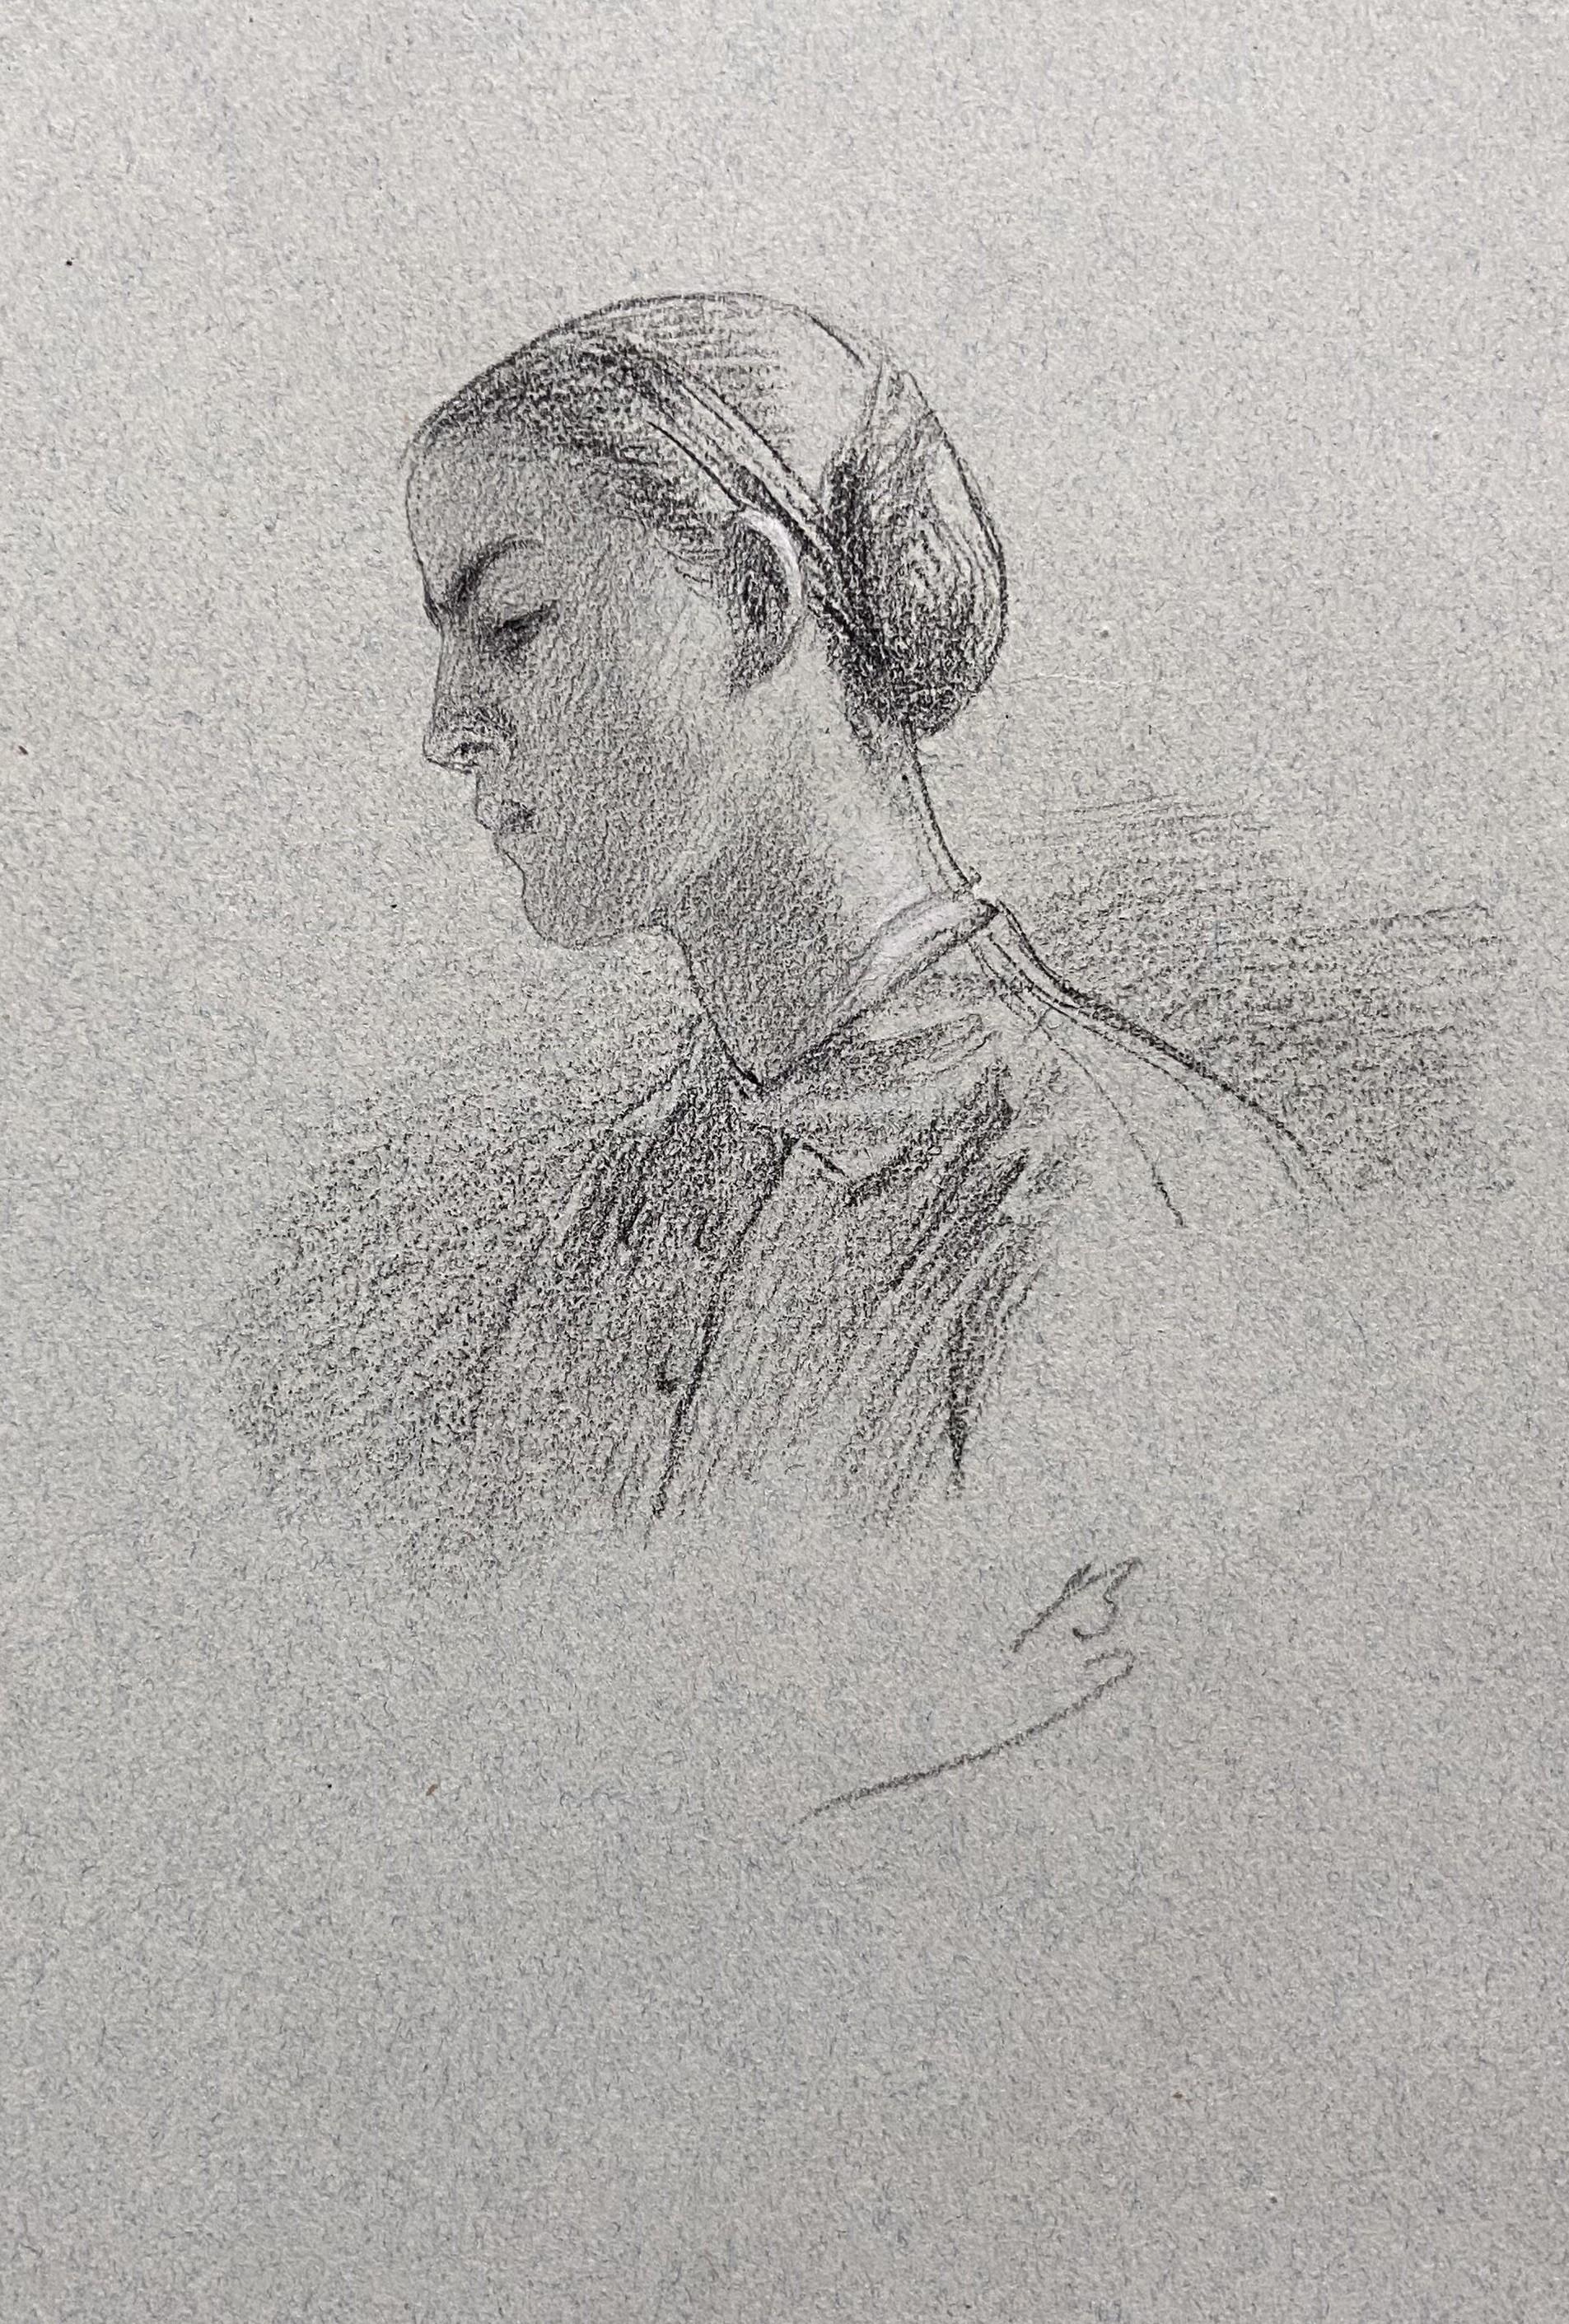 Alexandre Bida (1813-1895)
Une jeune femme de profil
Signé avec le Monogramme en bas à droite
Crayon sur papier gris-bleu
17.7 x 11.5 cm
Encadré : 36,5 x 27 cm

Ce dessin témoigne de la maîtrise technique de Bida en matière de design. Le rendu des